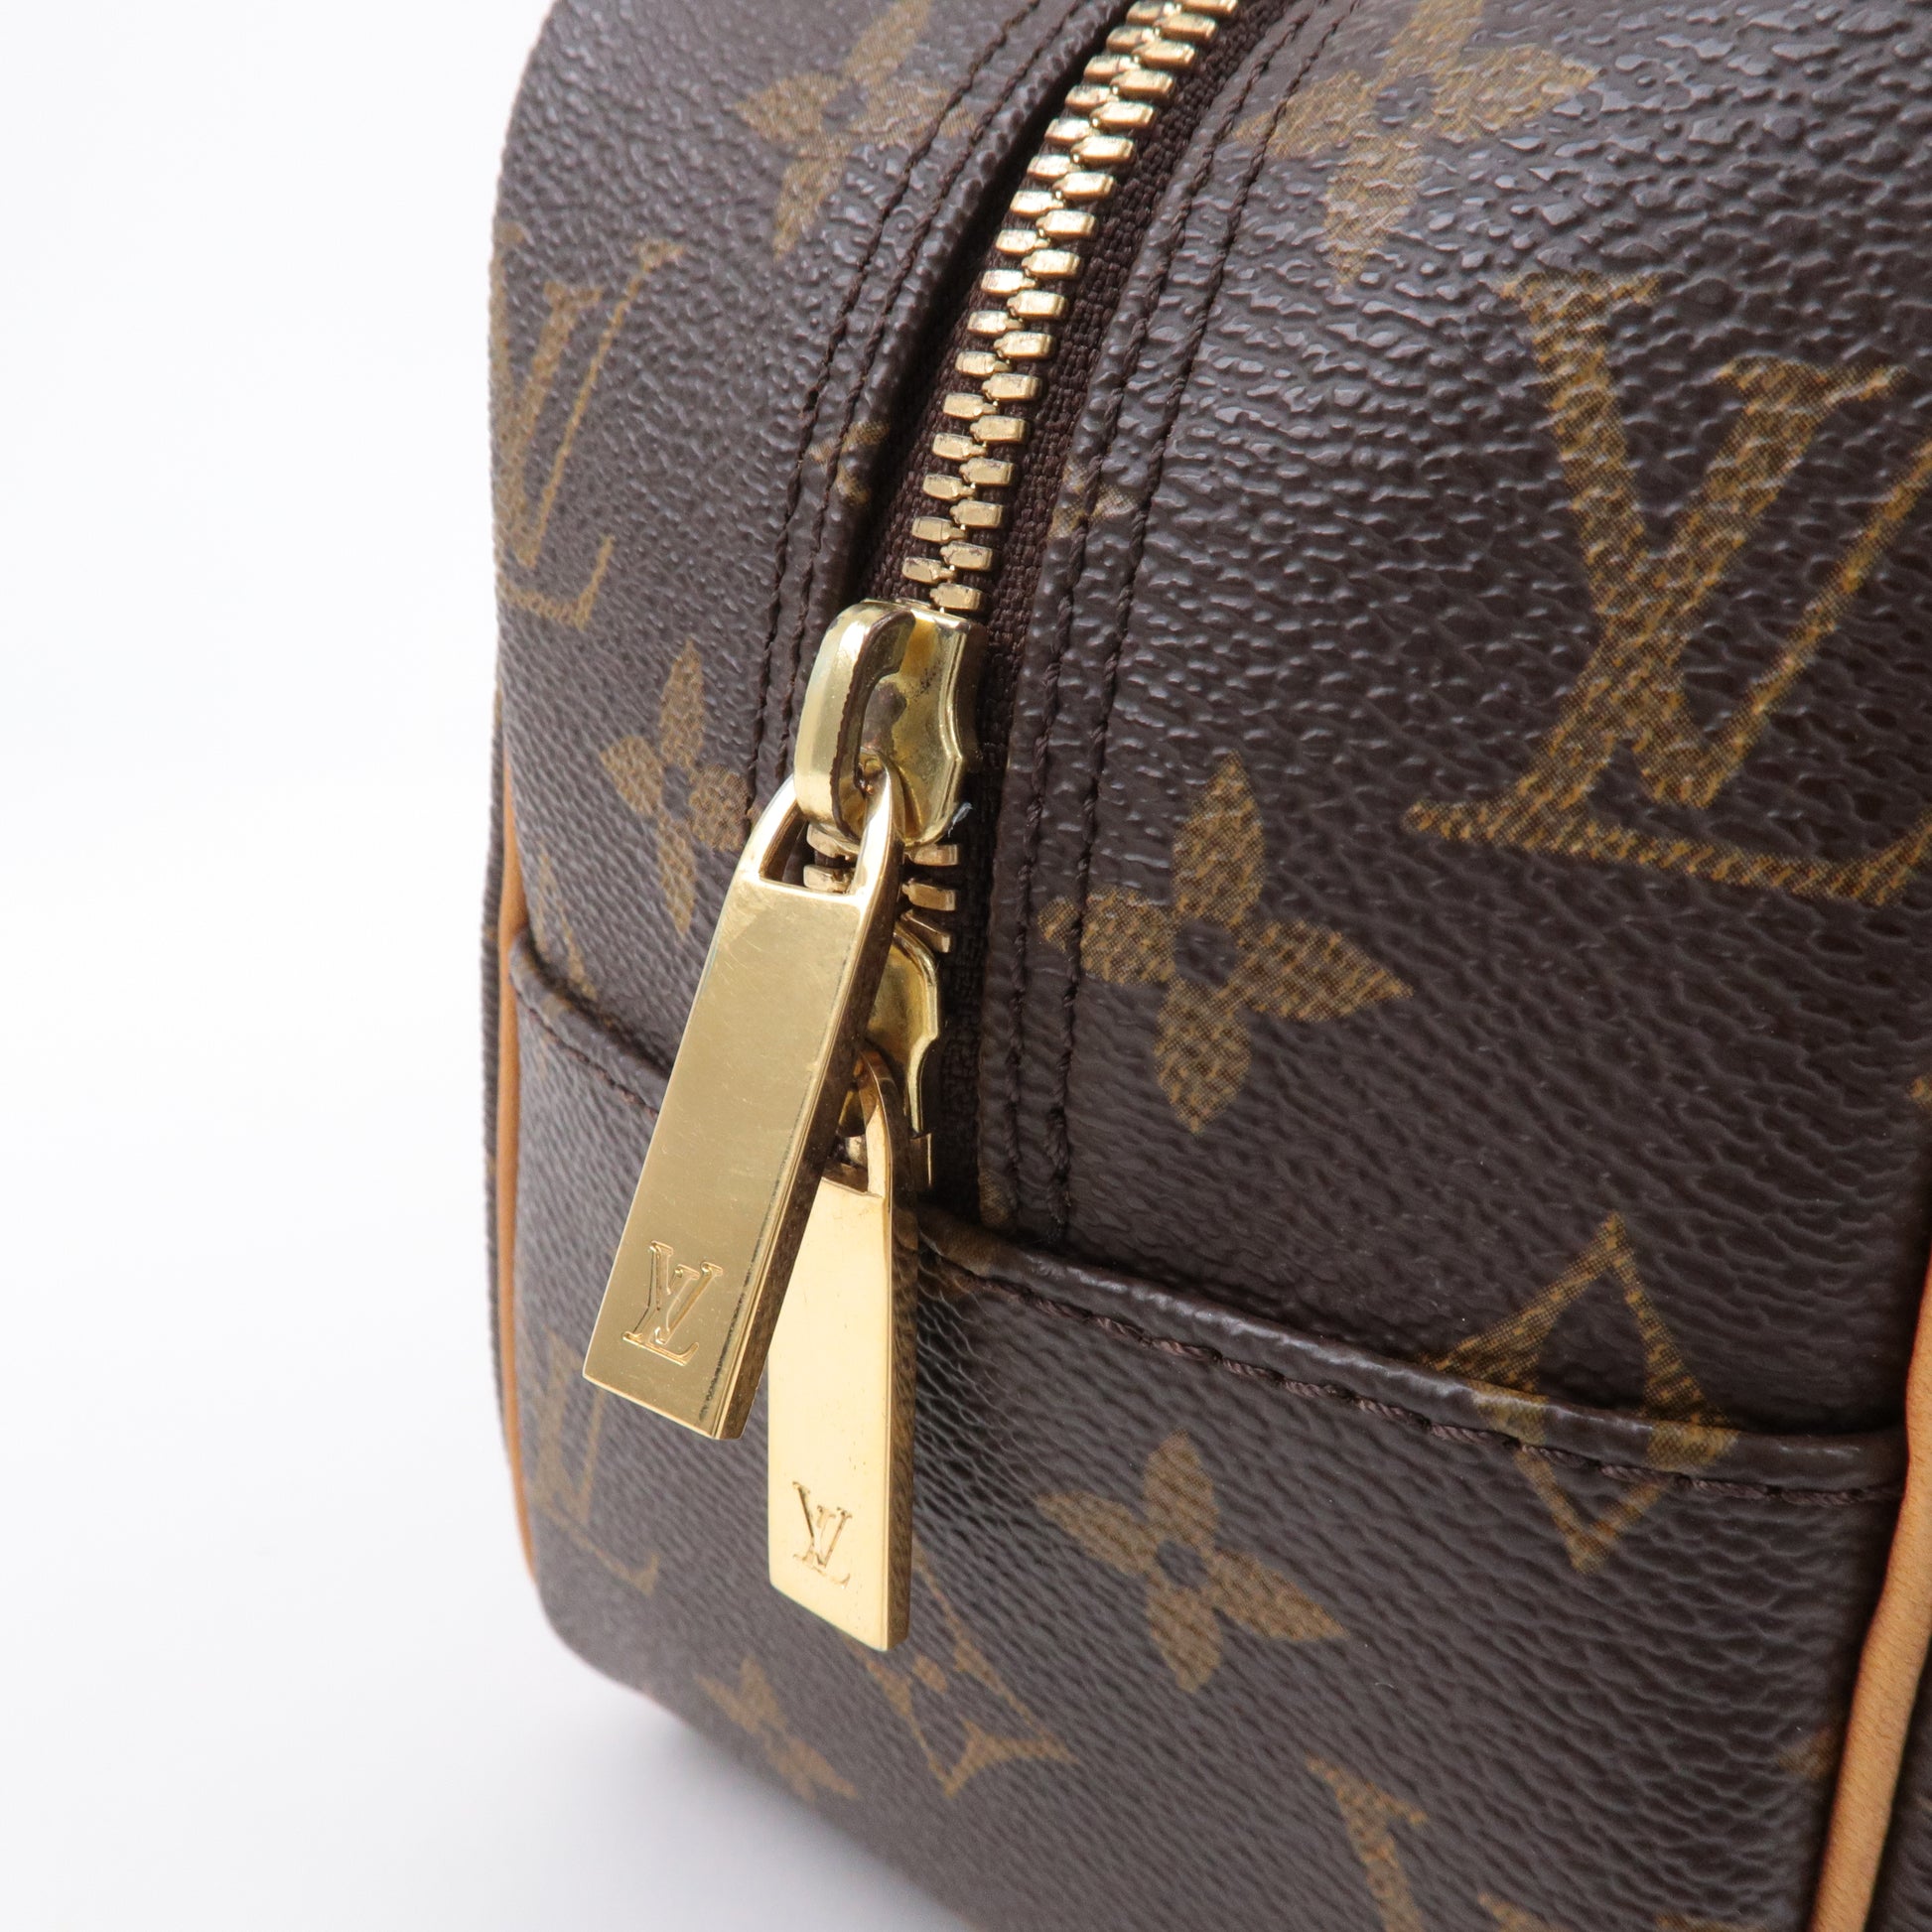 Louis - Bag - M51182 – dct - Vuitton - Shoulder - Monogram - Bag